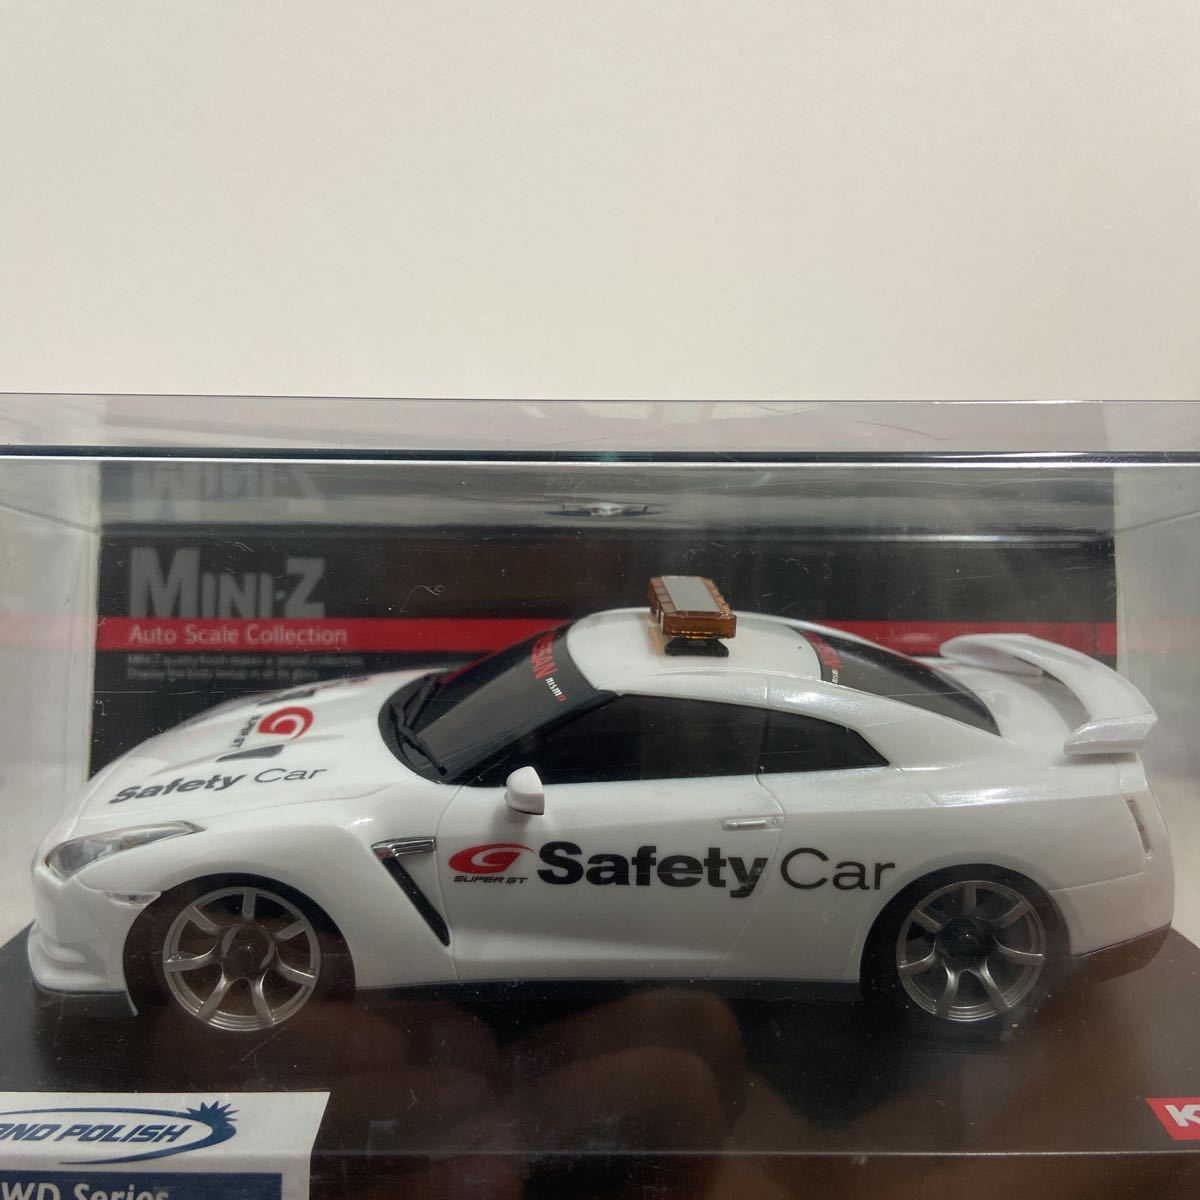 京商 MINI-Z NISSAN GT-R SUPER GT Safety Car R35 1/43 セット 日産 セーフティーカー ASC オートスケールコレクション RCボディ ミニカー_画像9